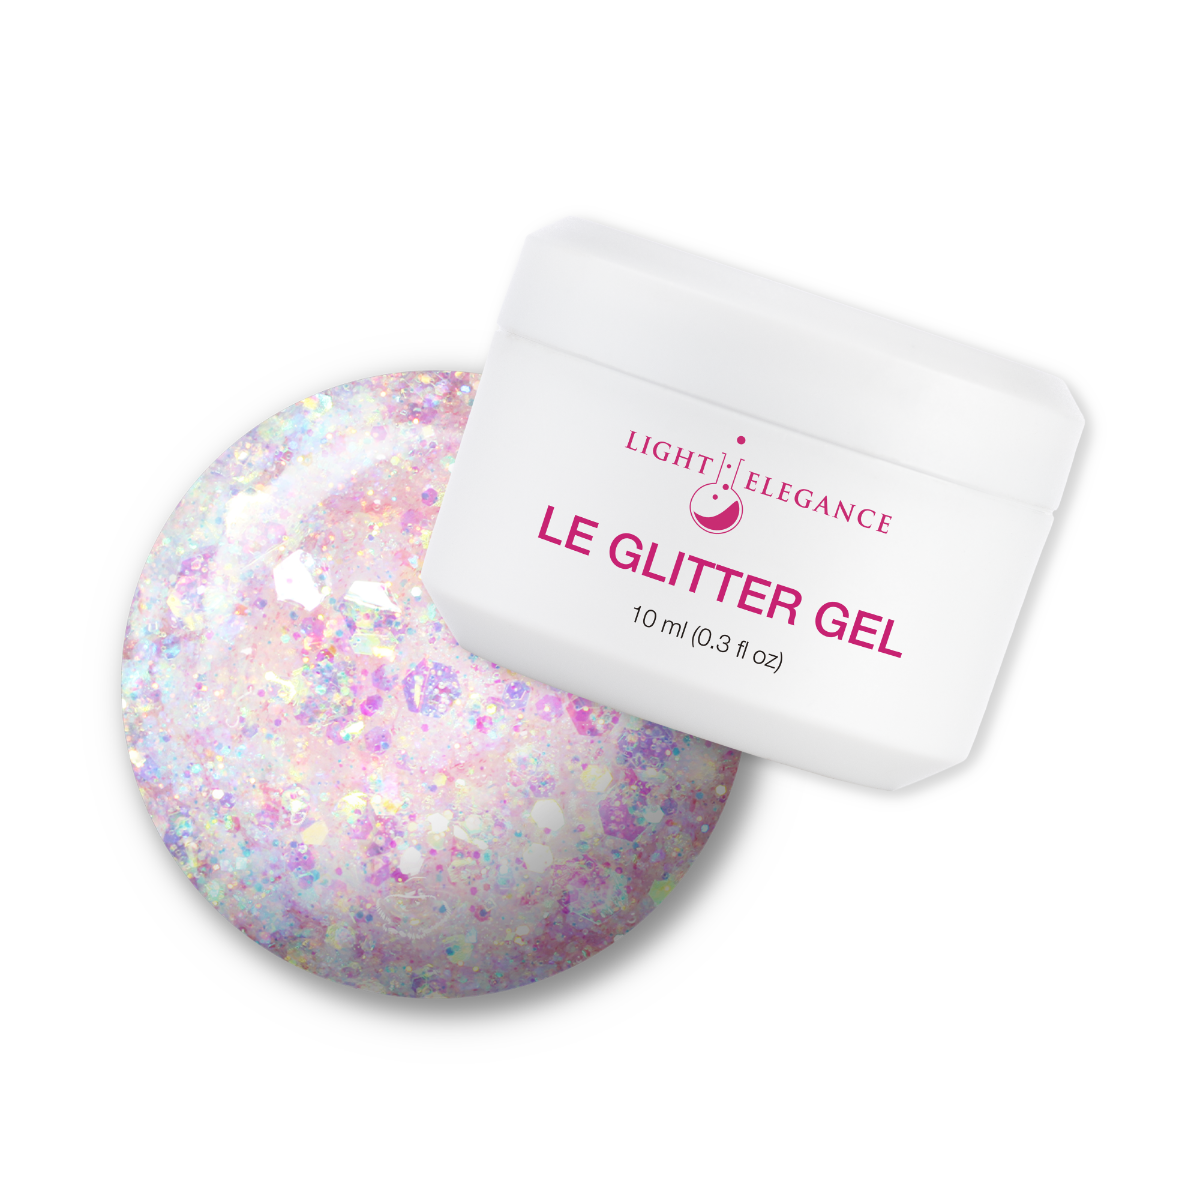 Light Elegance Glitter Gel - Fairy Good! :: New Packaging